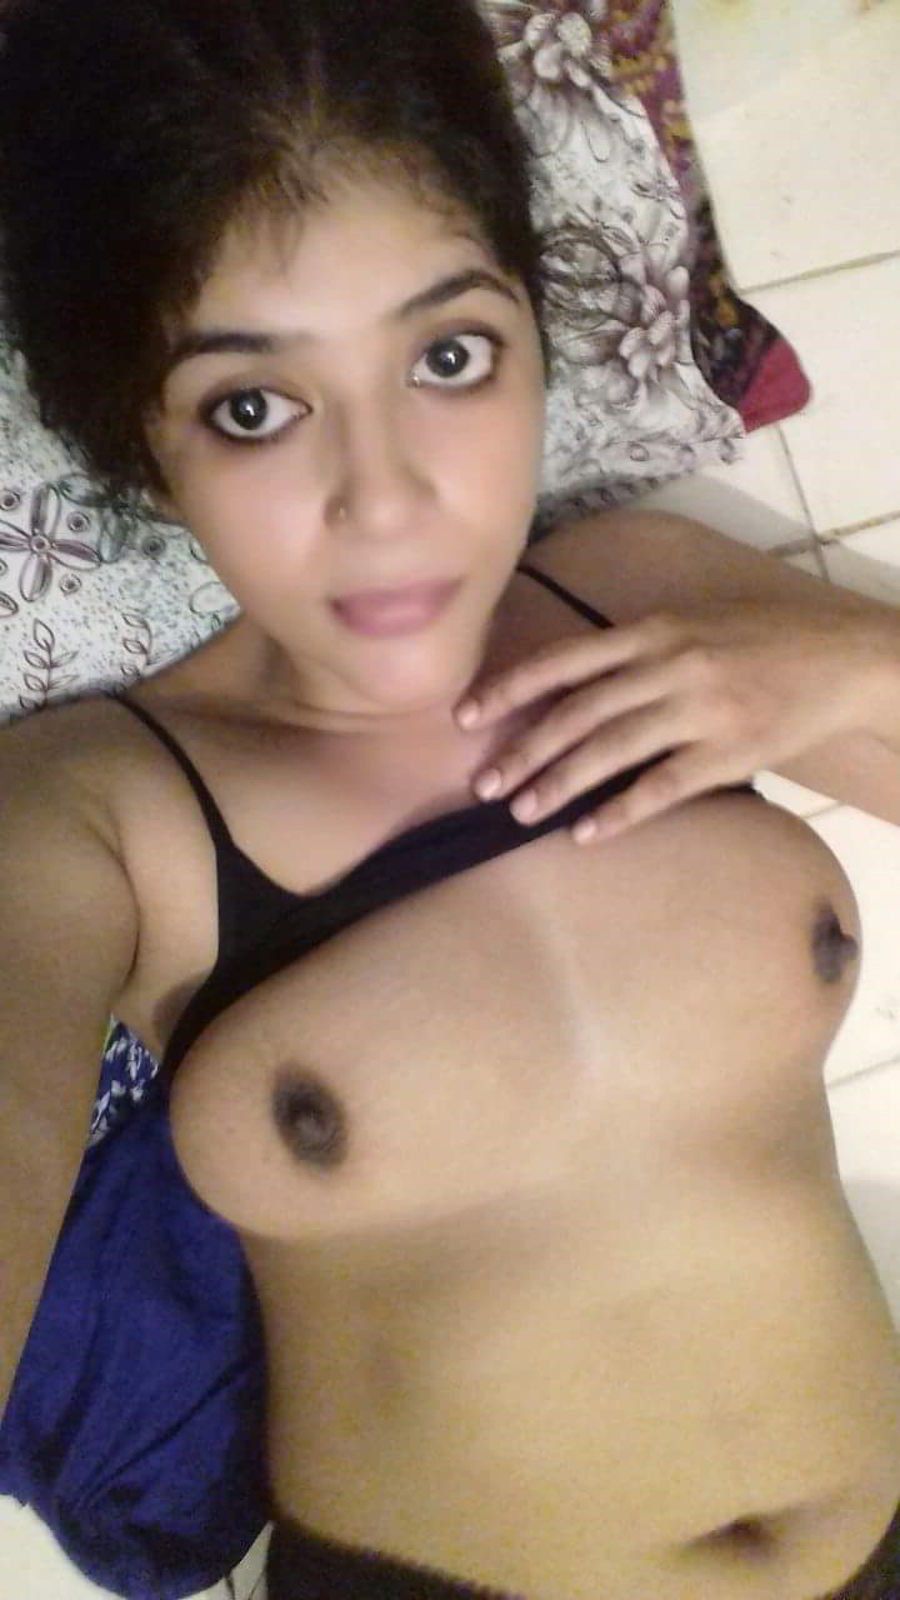 telugu nudist woman pics xxx gallery pic